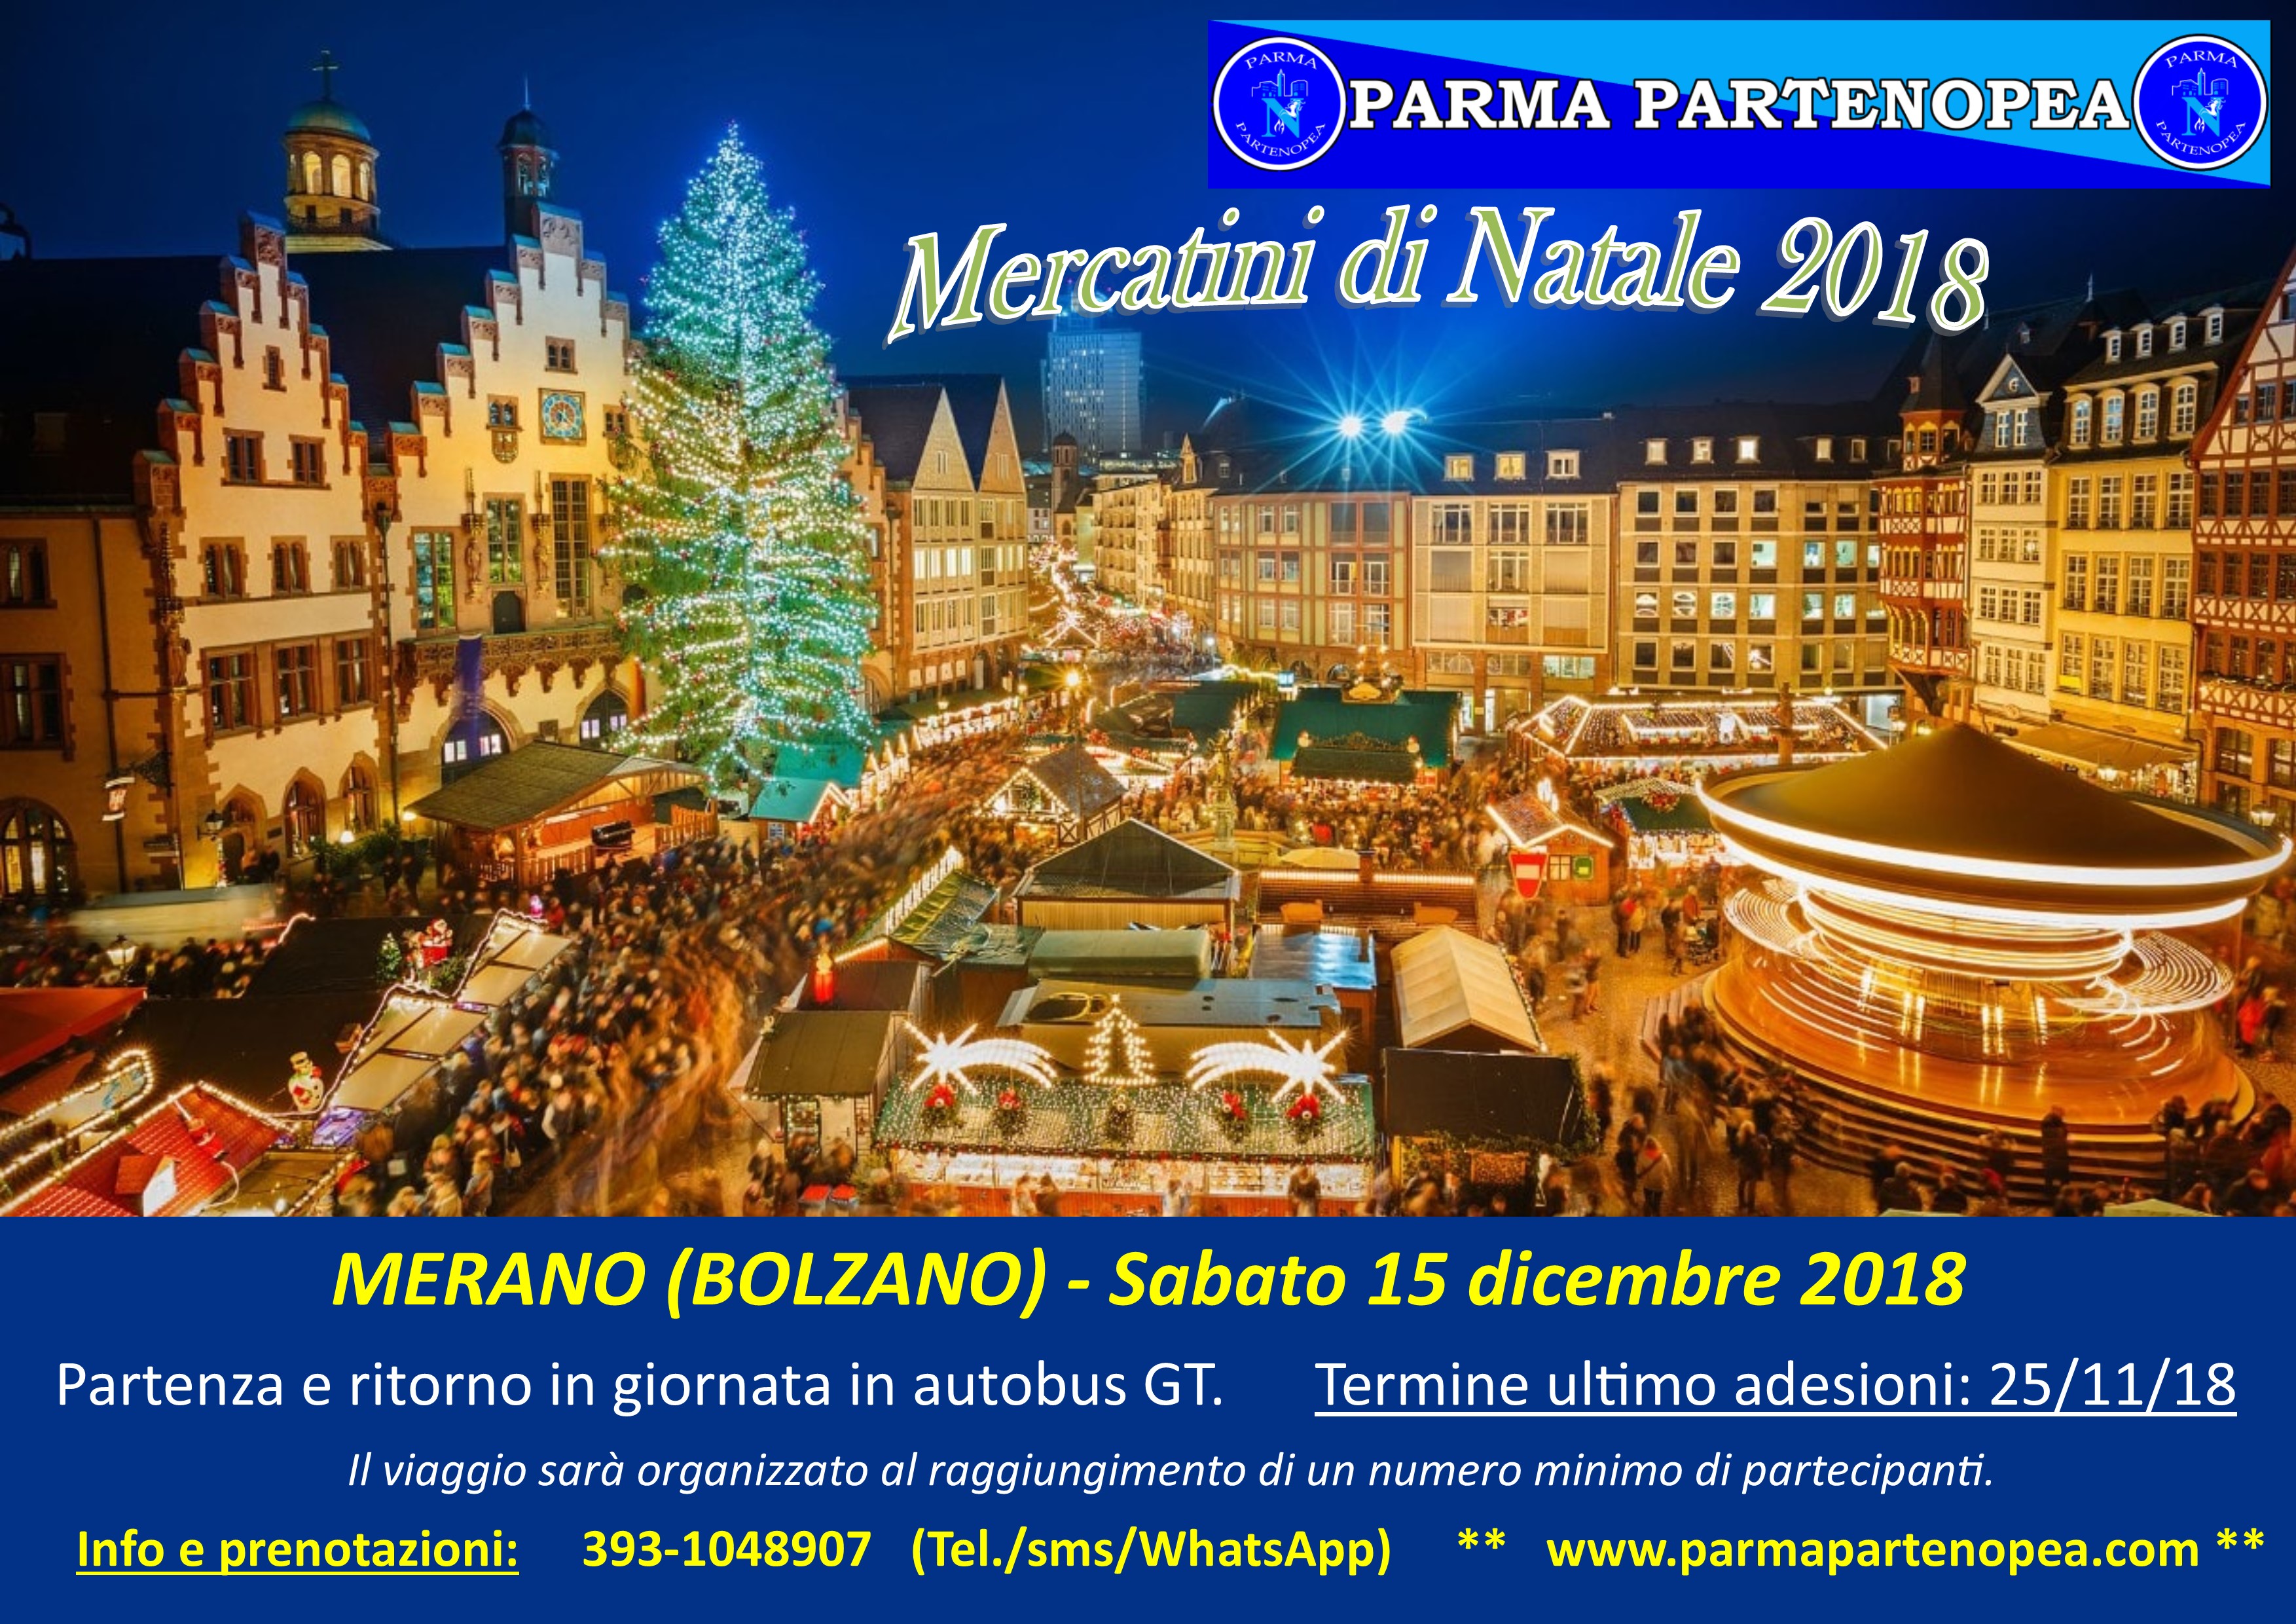 Mercatini Di Natale Di Merano.Mercatini Di Natale 2018 A Merano Bolzano Con Parma Partenopea Sabato 15 Dicembre 2018 Parma Partenopea